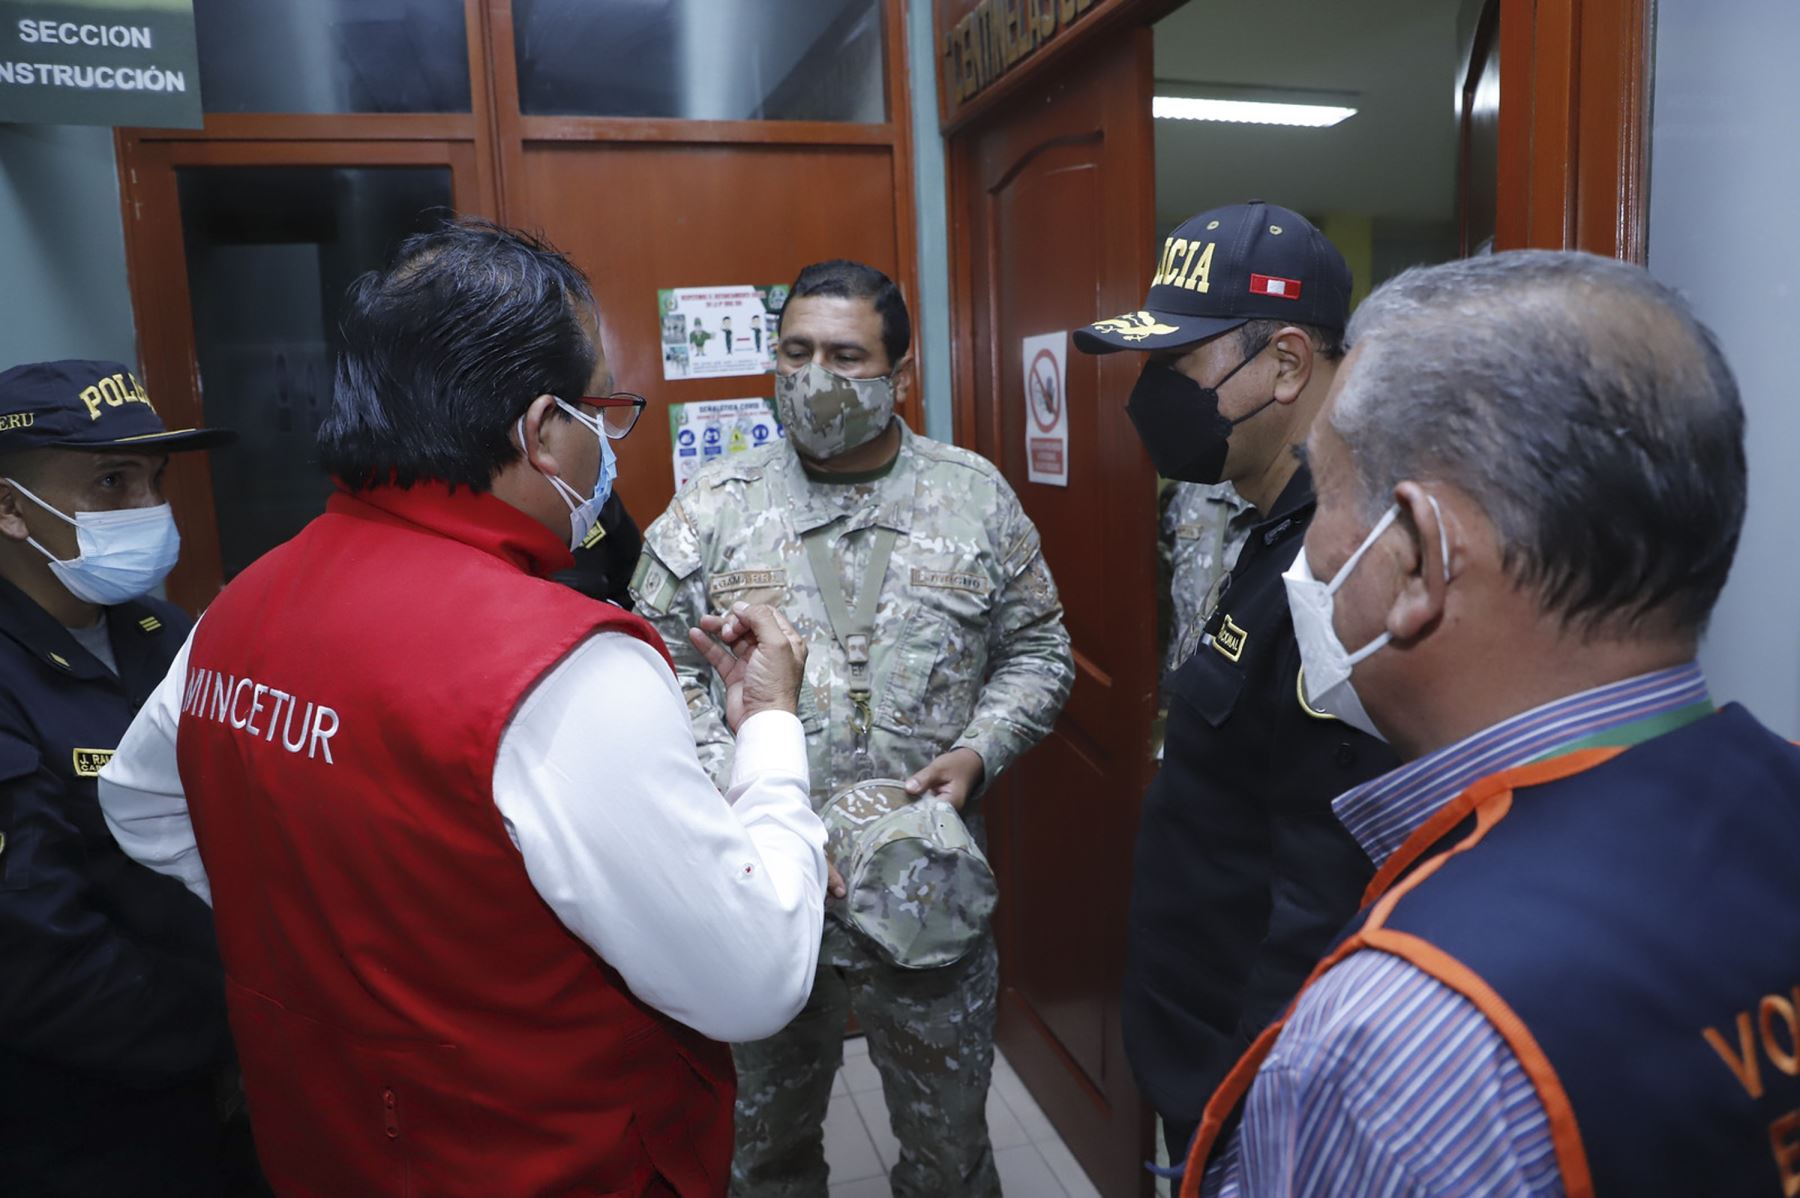 El ministro de Comercio Exterior y turismo, Roberto Sánchez, llegó a Utcubamba, en la región Amazonas, para supervisar las acciones de apoyo a los damnificados por el terremoto de magnitud 7.5 ocurrido el 28 de noviembre. Foto: ANDINA/Mincetur